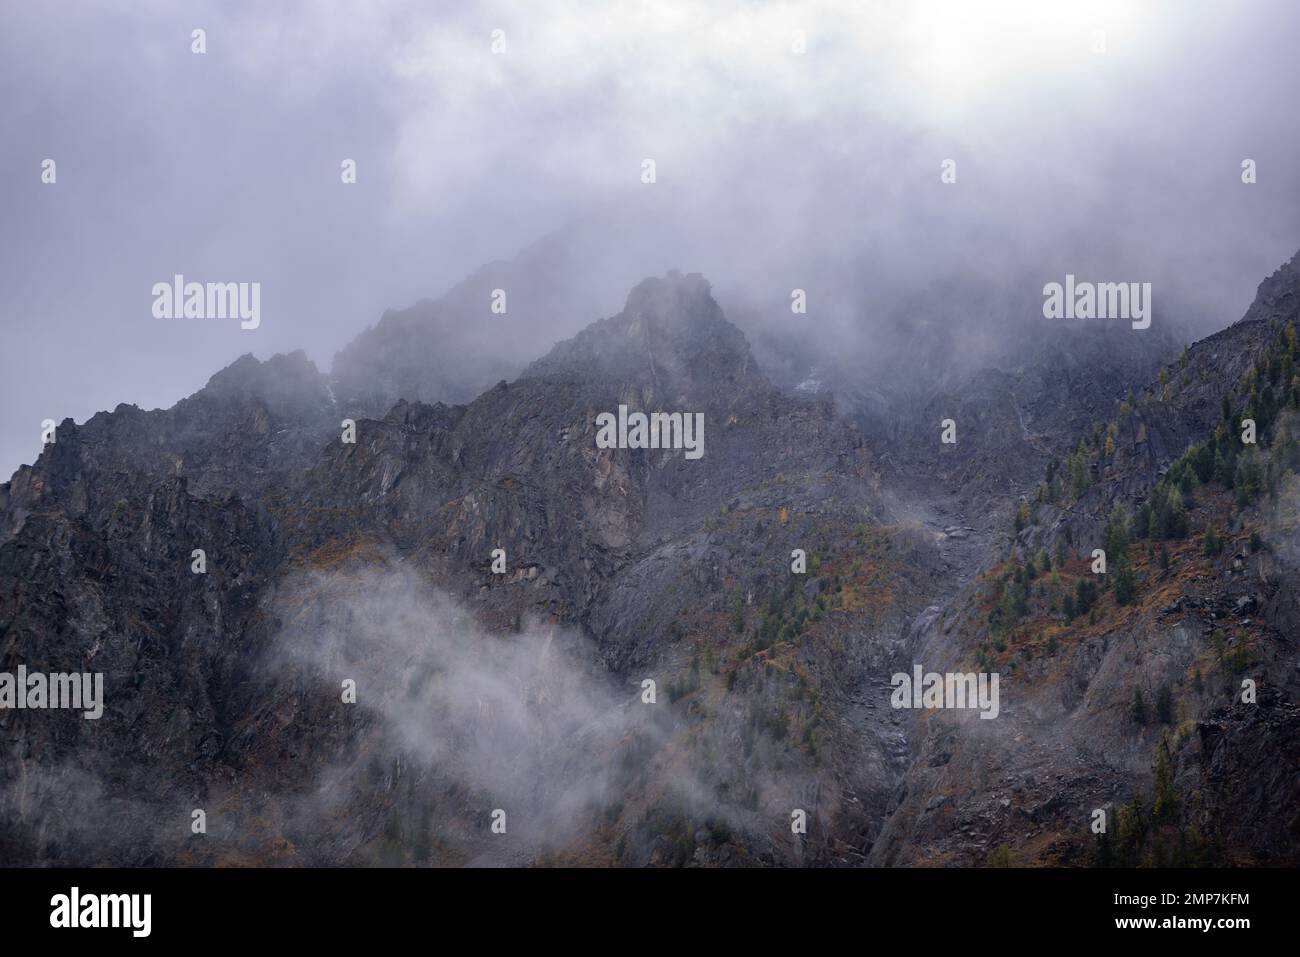 Nebel mit Schnee und Wolken zieht sich zu den steinernen Bergen mit Fichten und Wald auf steilen Klippen nach Regen während des Tages in Altai. Stockfoto